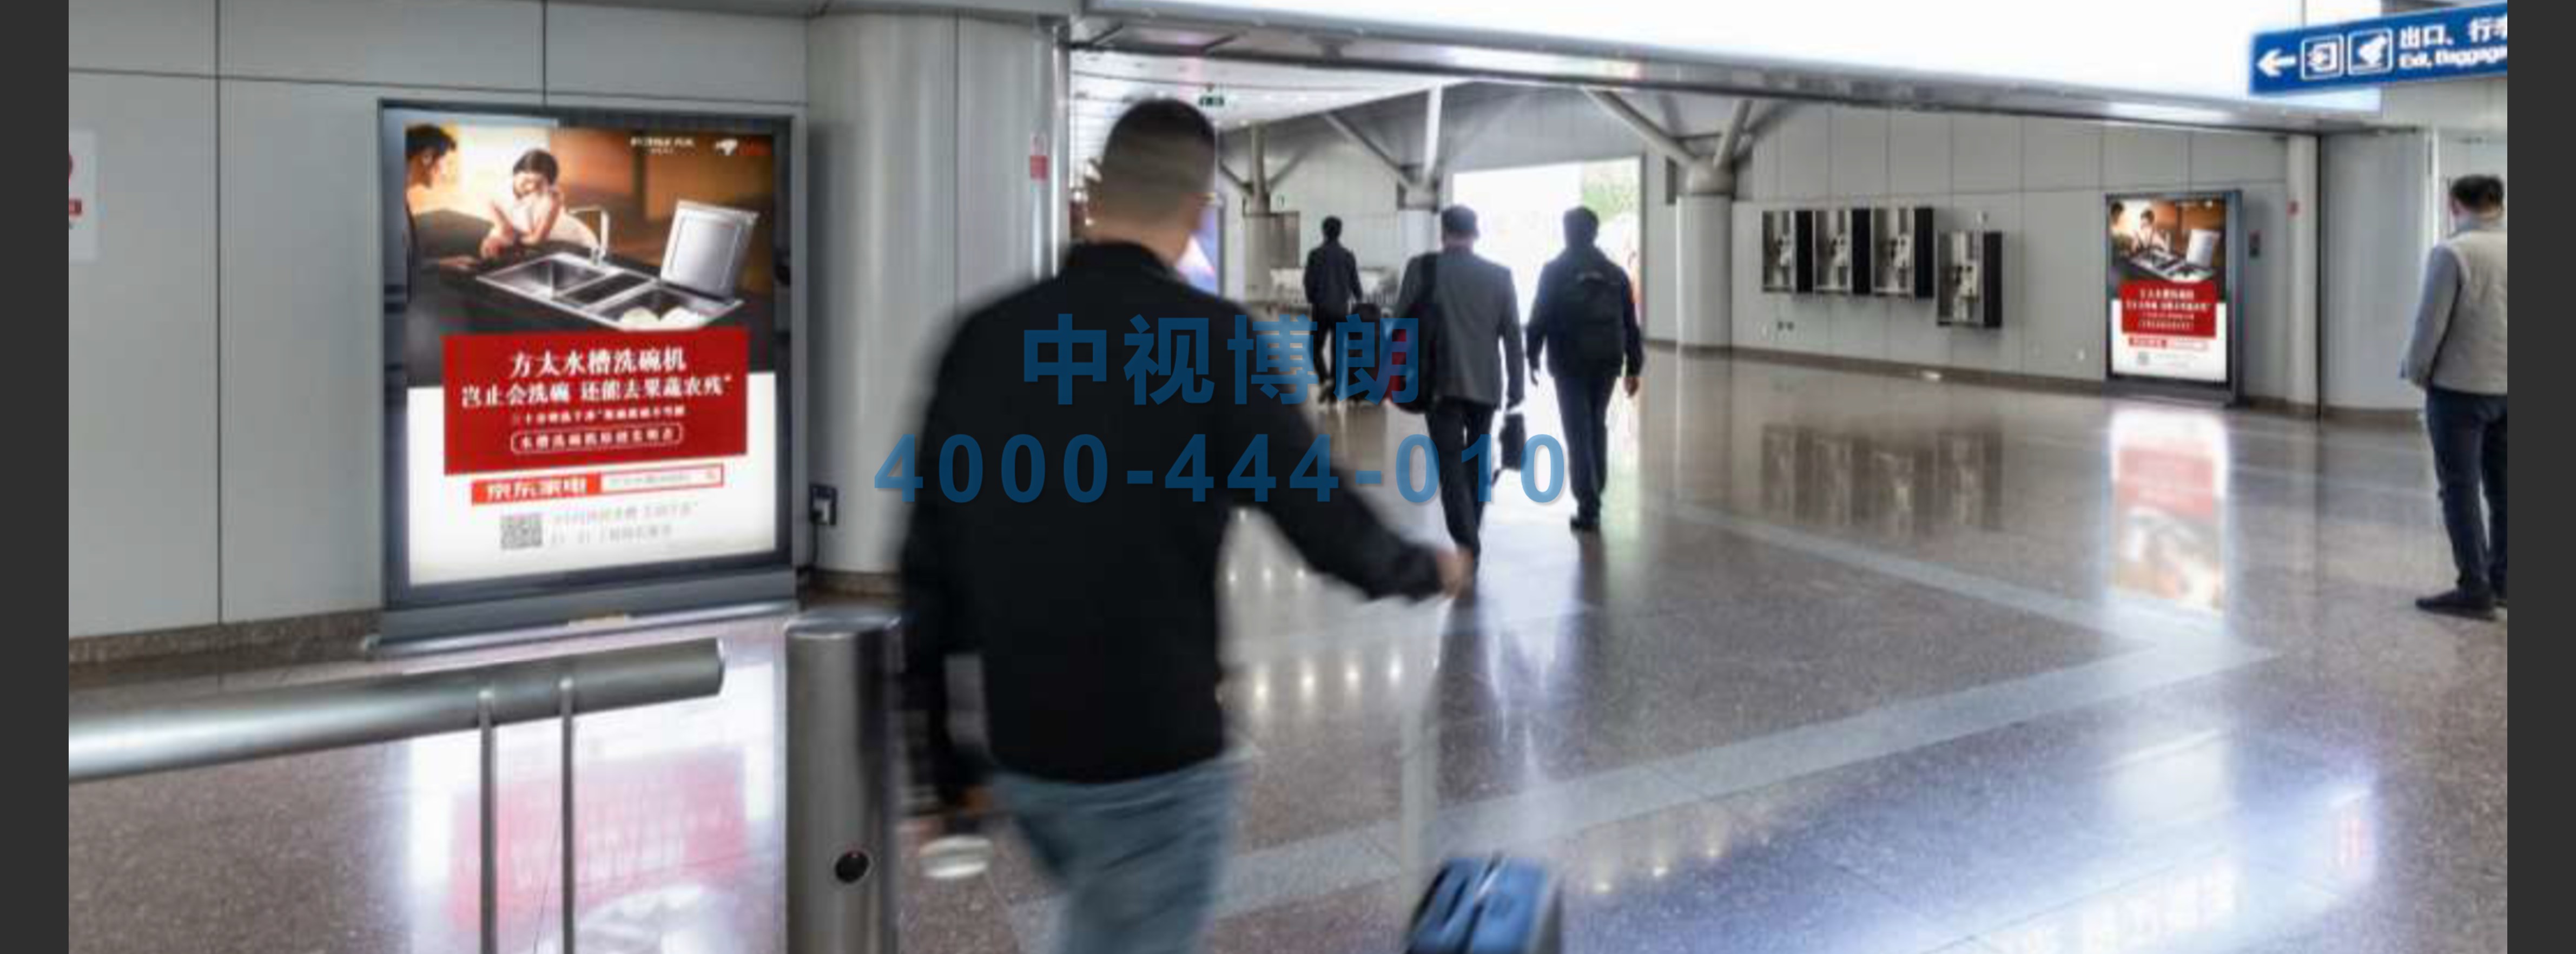 北京首都机场广告-T2到达走廊滚动灯箱01